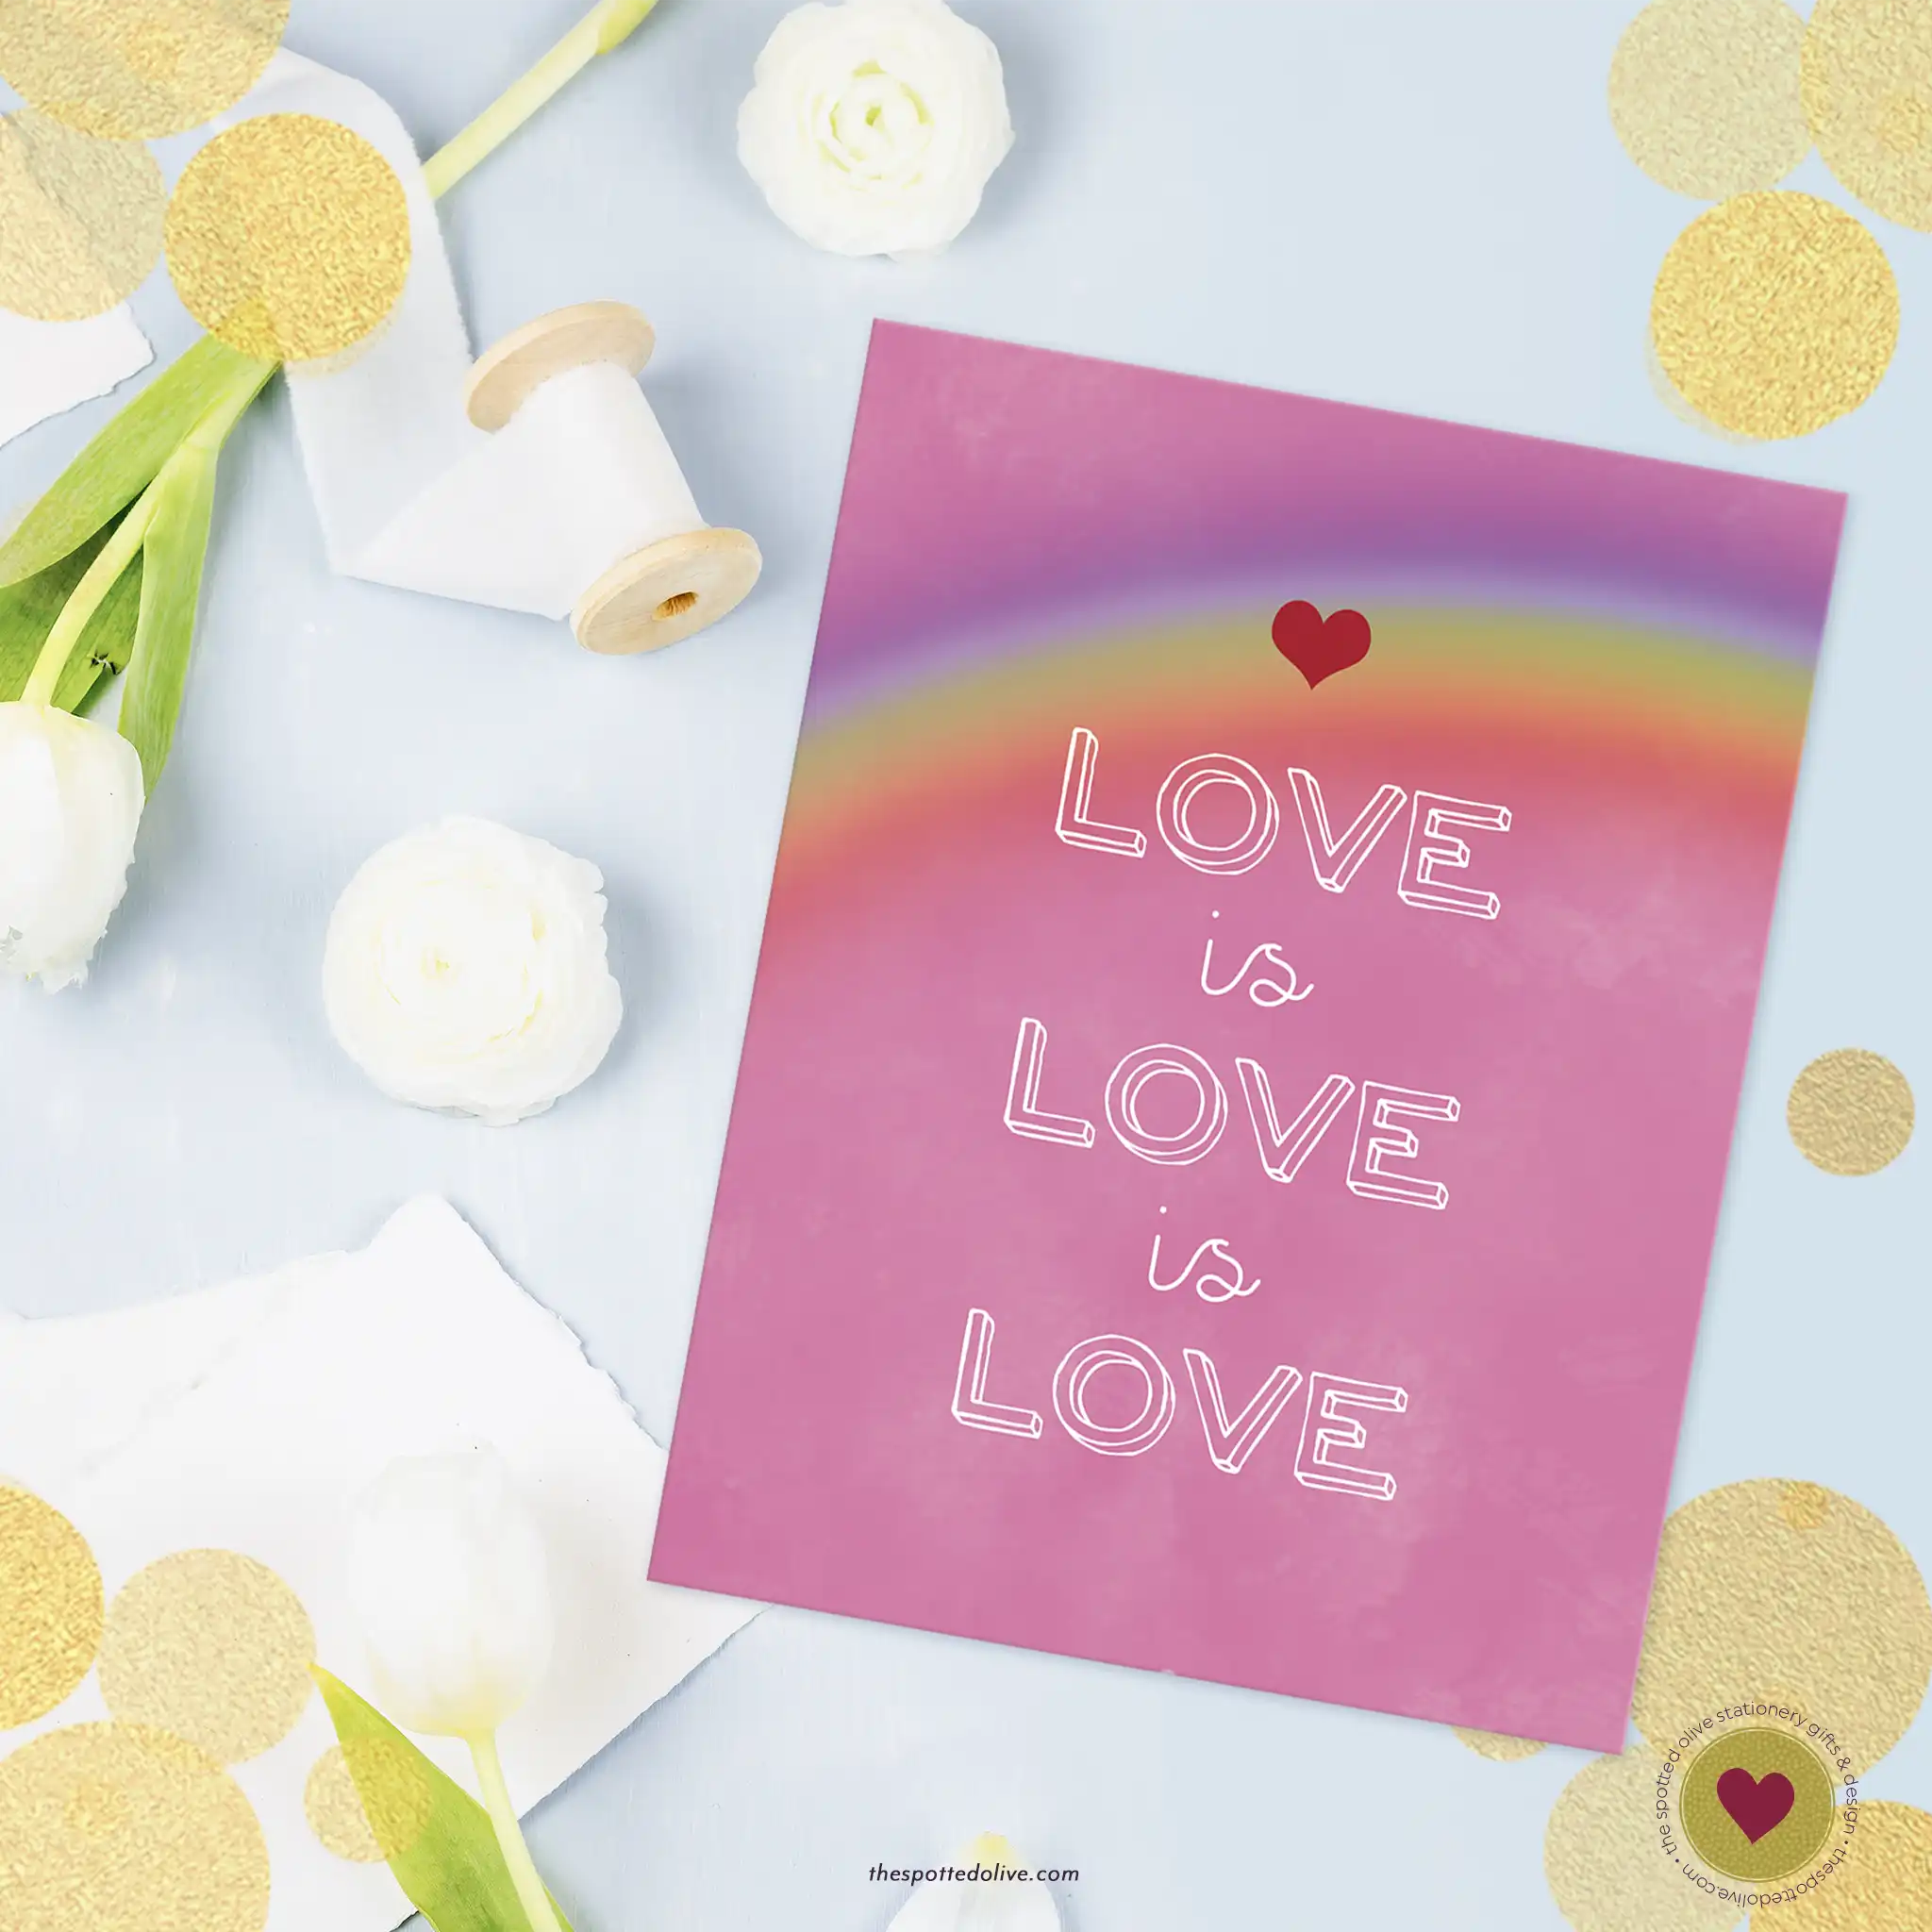 Love is Love is Love Pride Card Free Printable